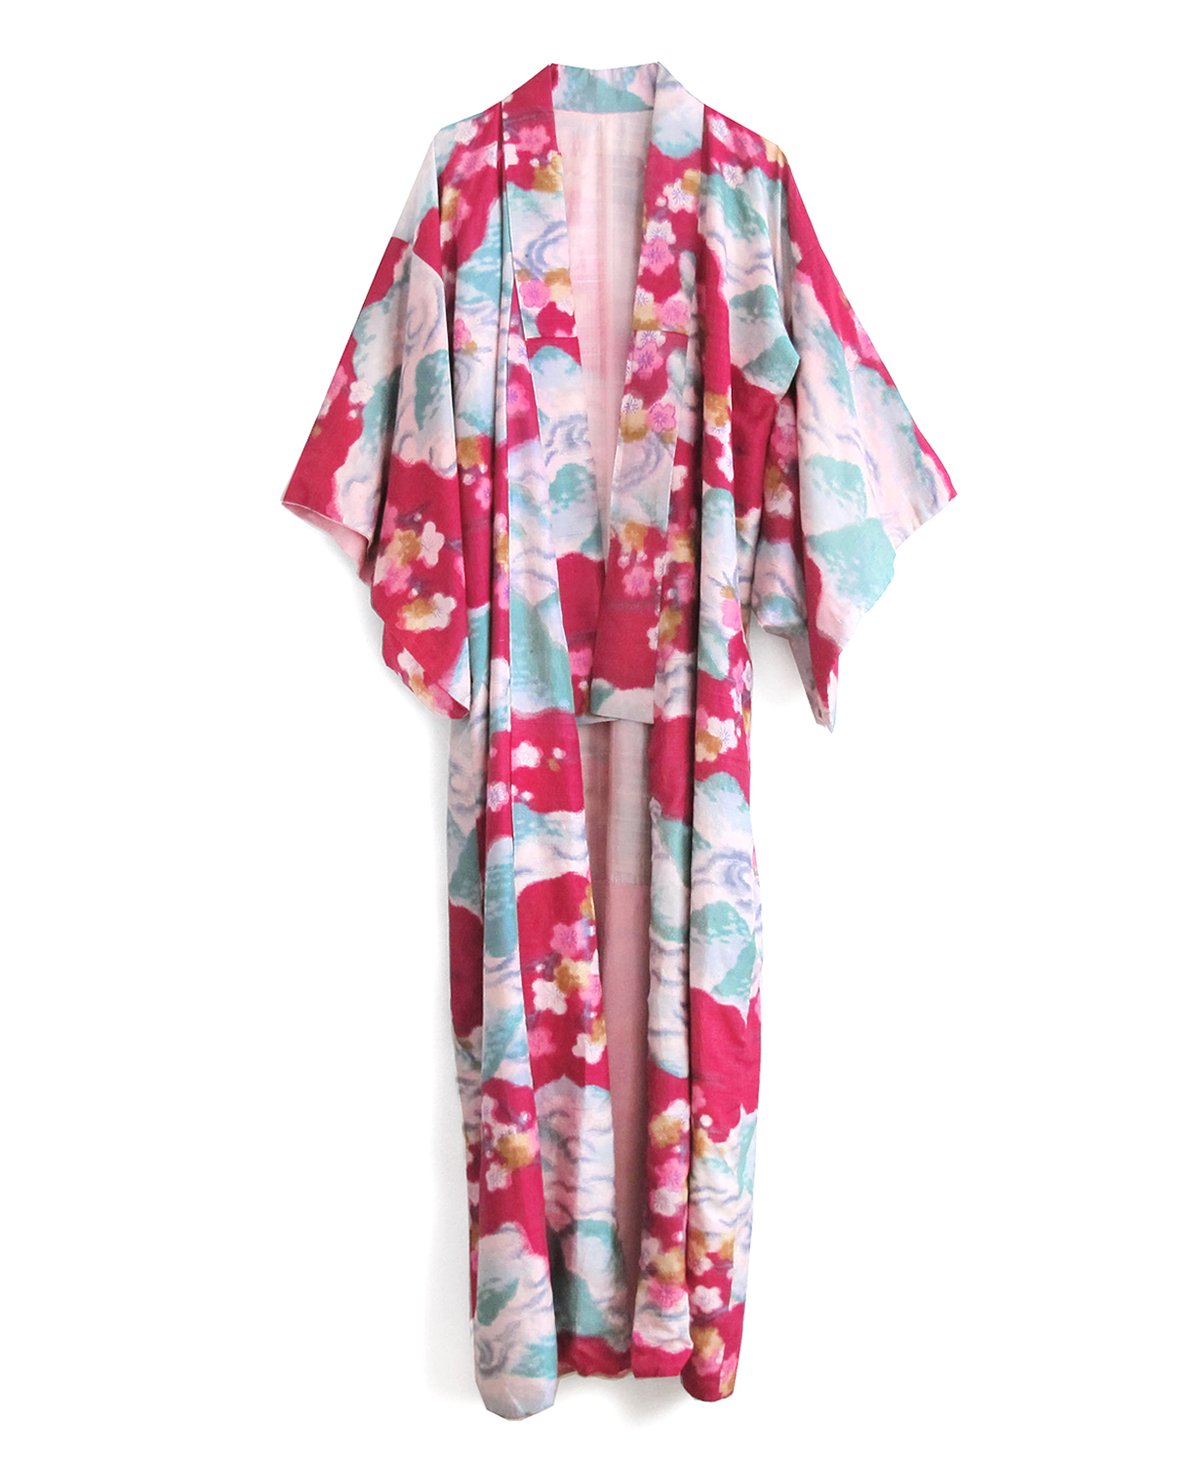 Image of fouschafarvet kimono af råsilke med hvide kirsebærblomster